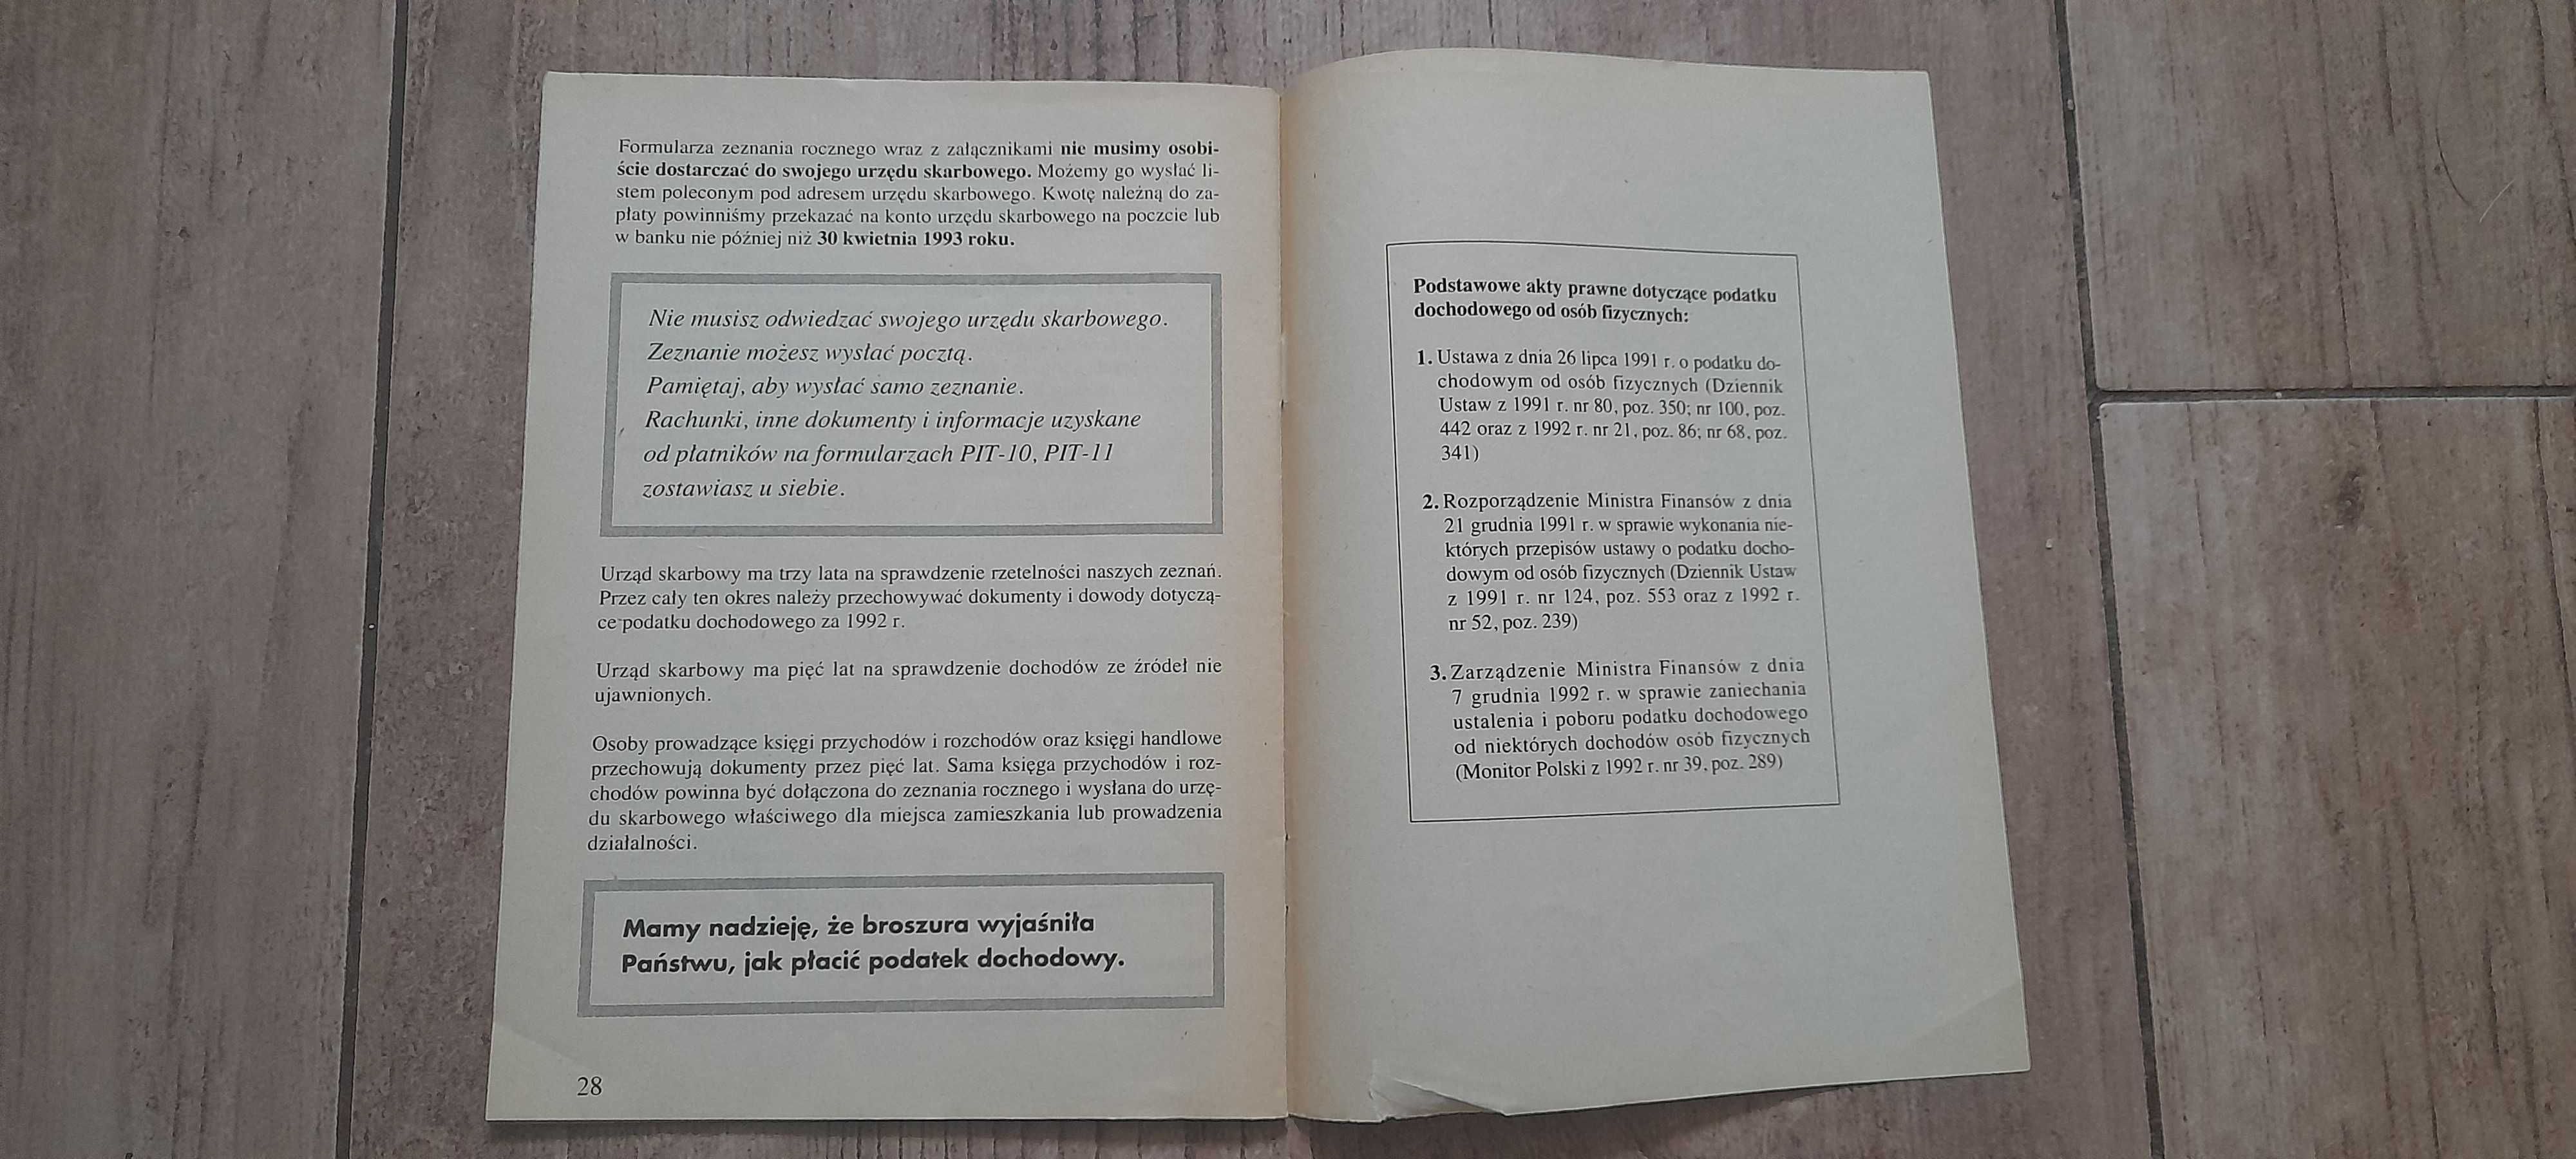 "Jak płacić podatek dochodowy od osób fizycznych za rok 1992" broszura